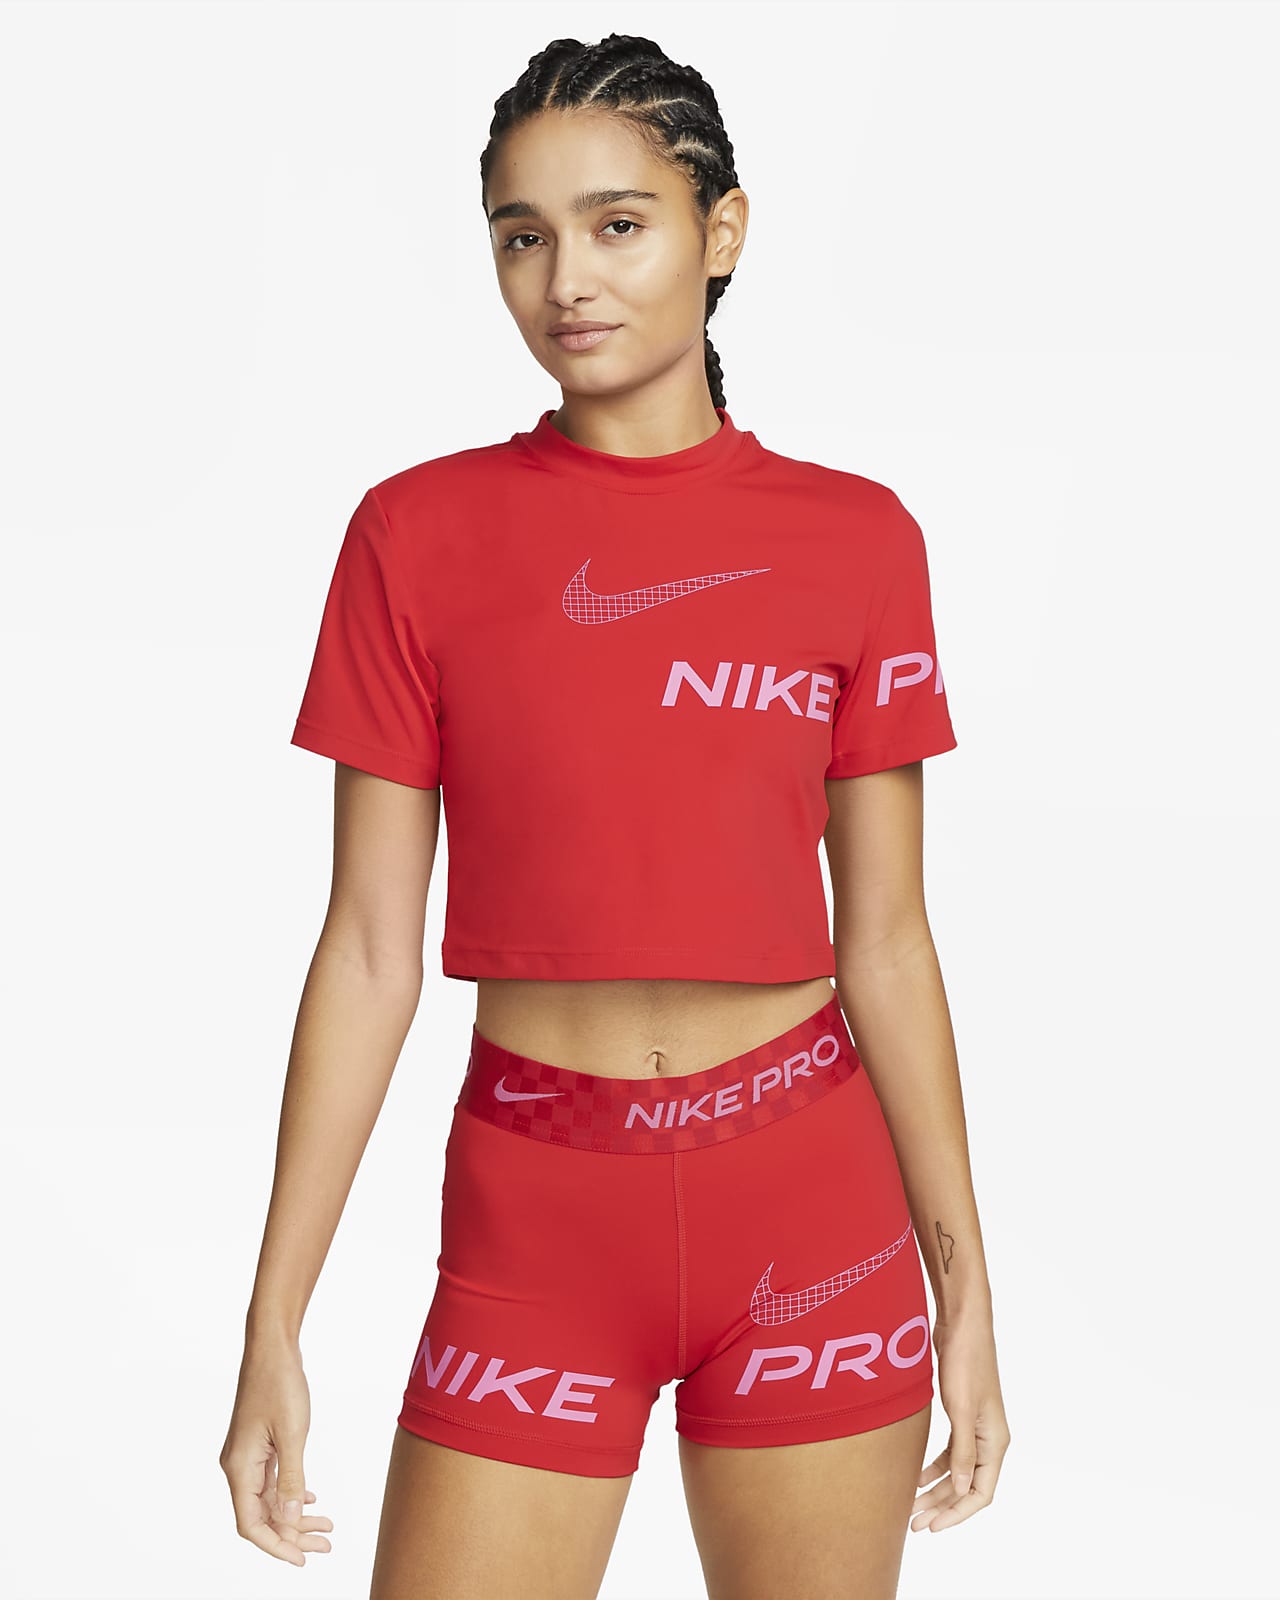 Womens Nike Pro.